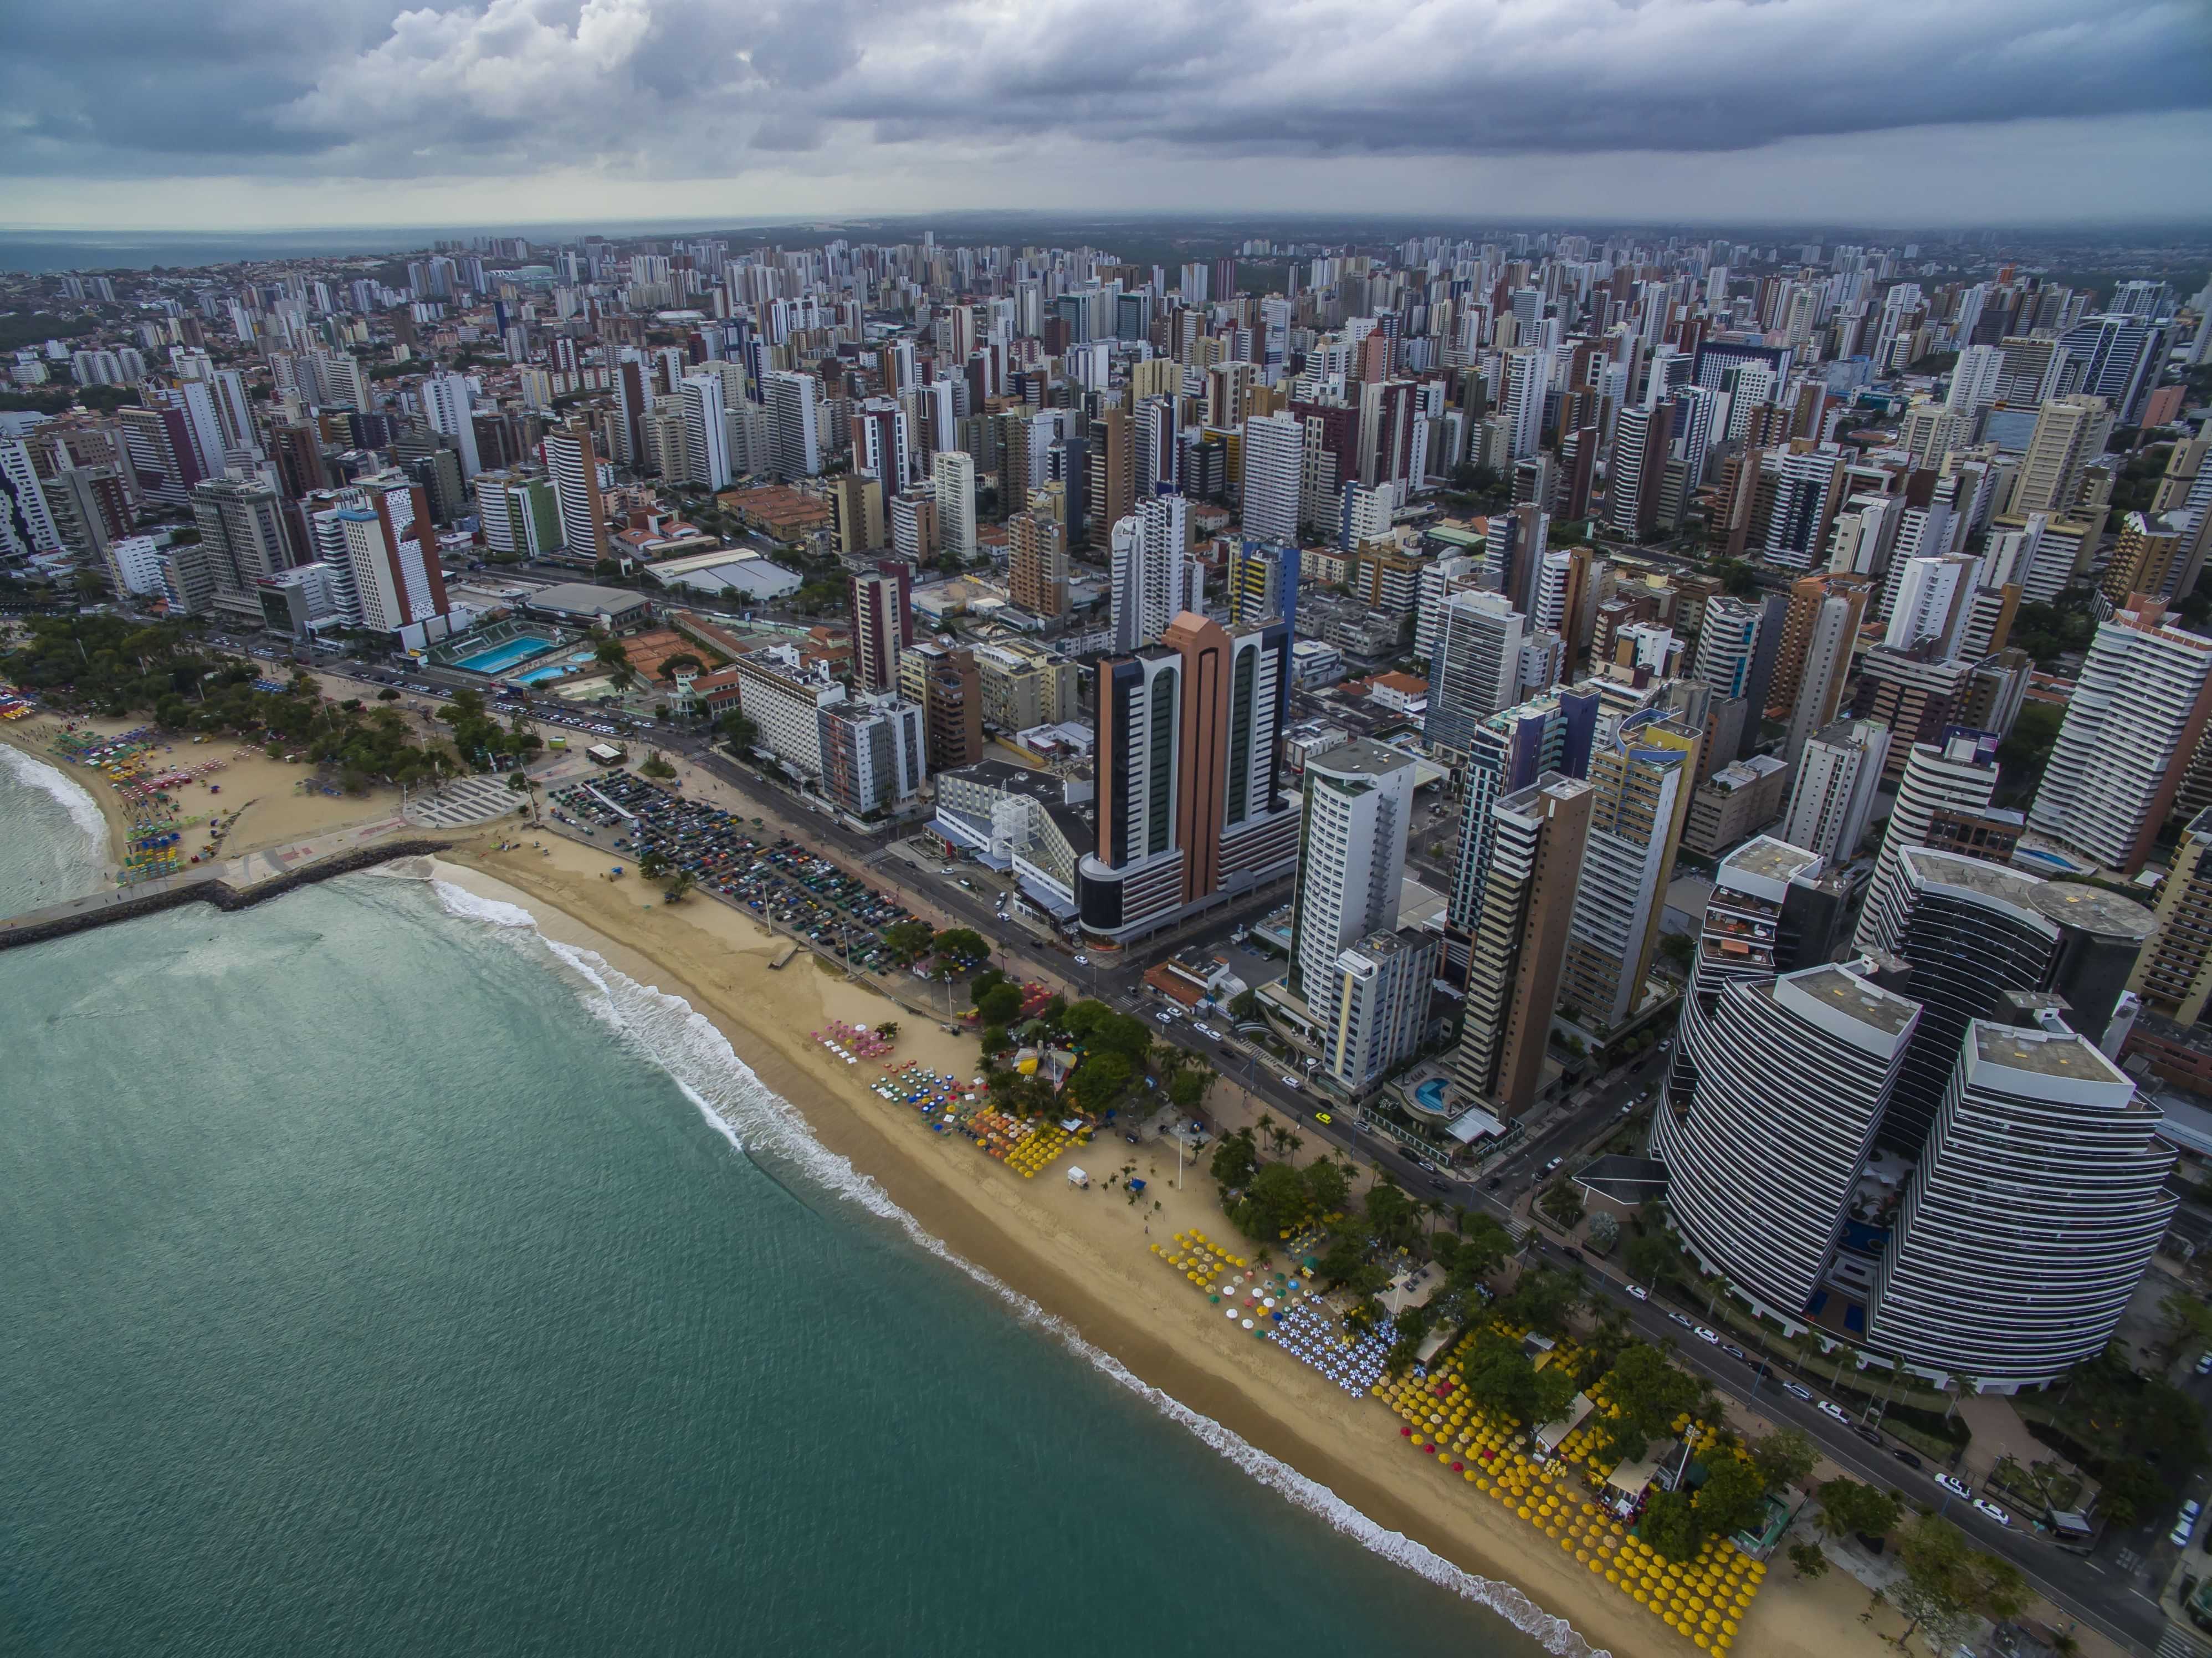  10 melhores escolas municipais de Fortaleza segundo pais, alunos e professores 